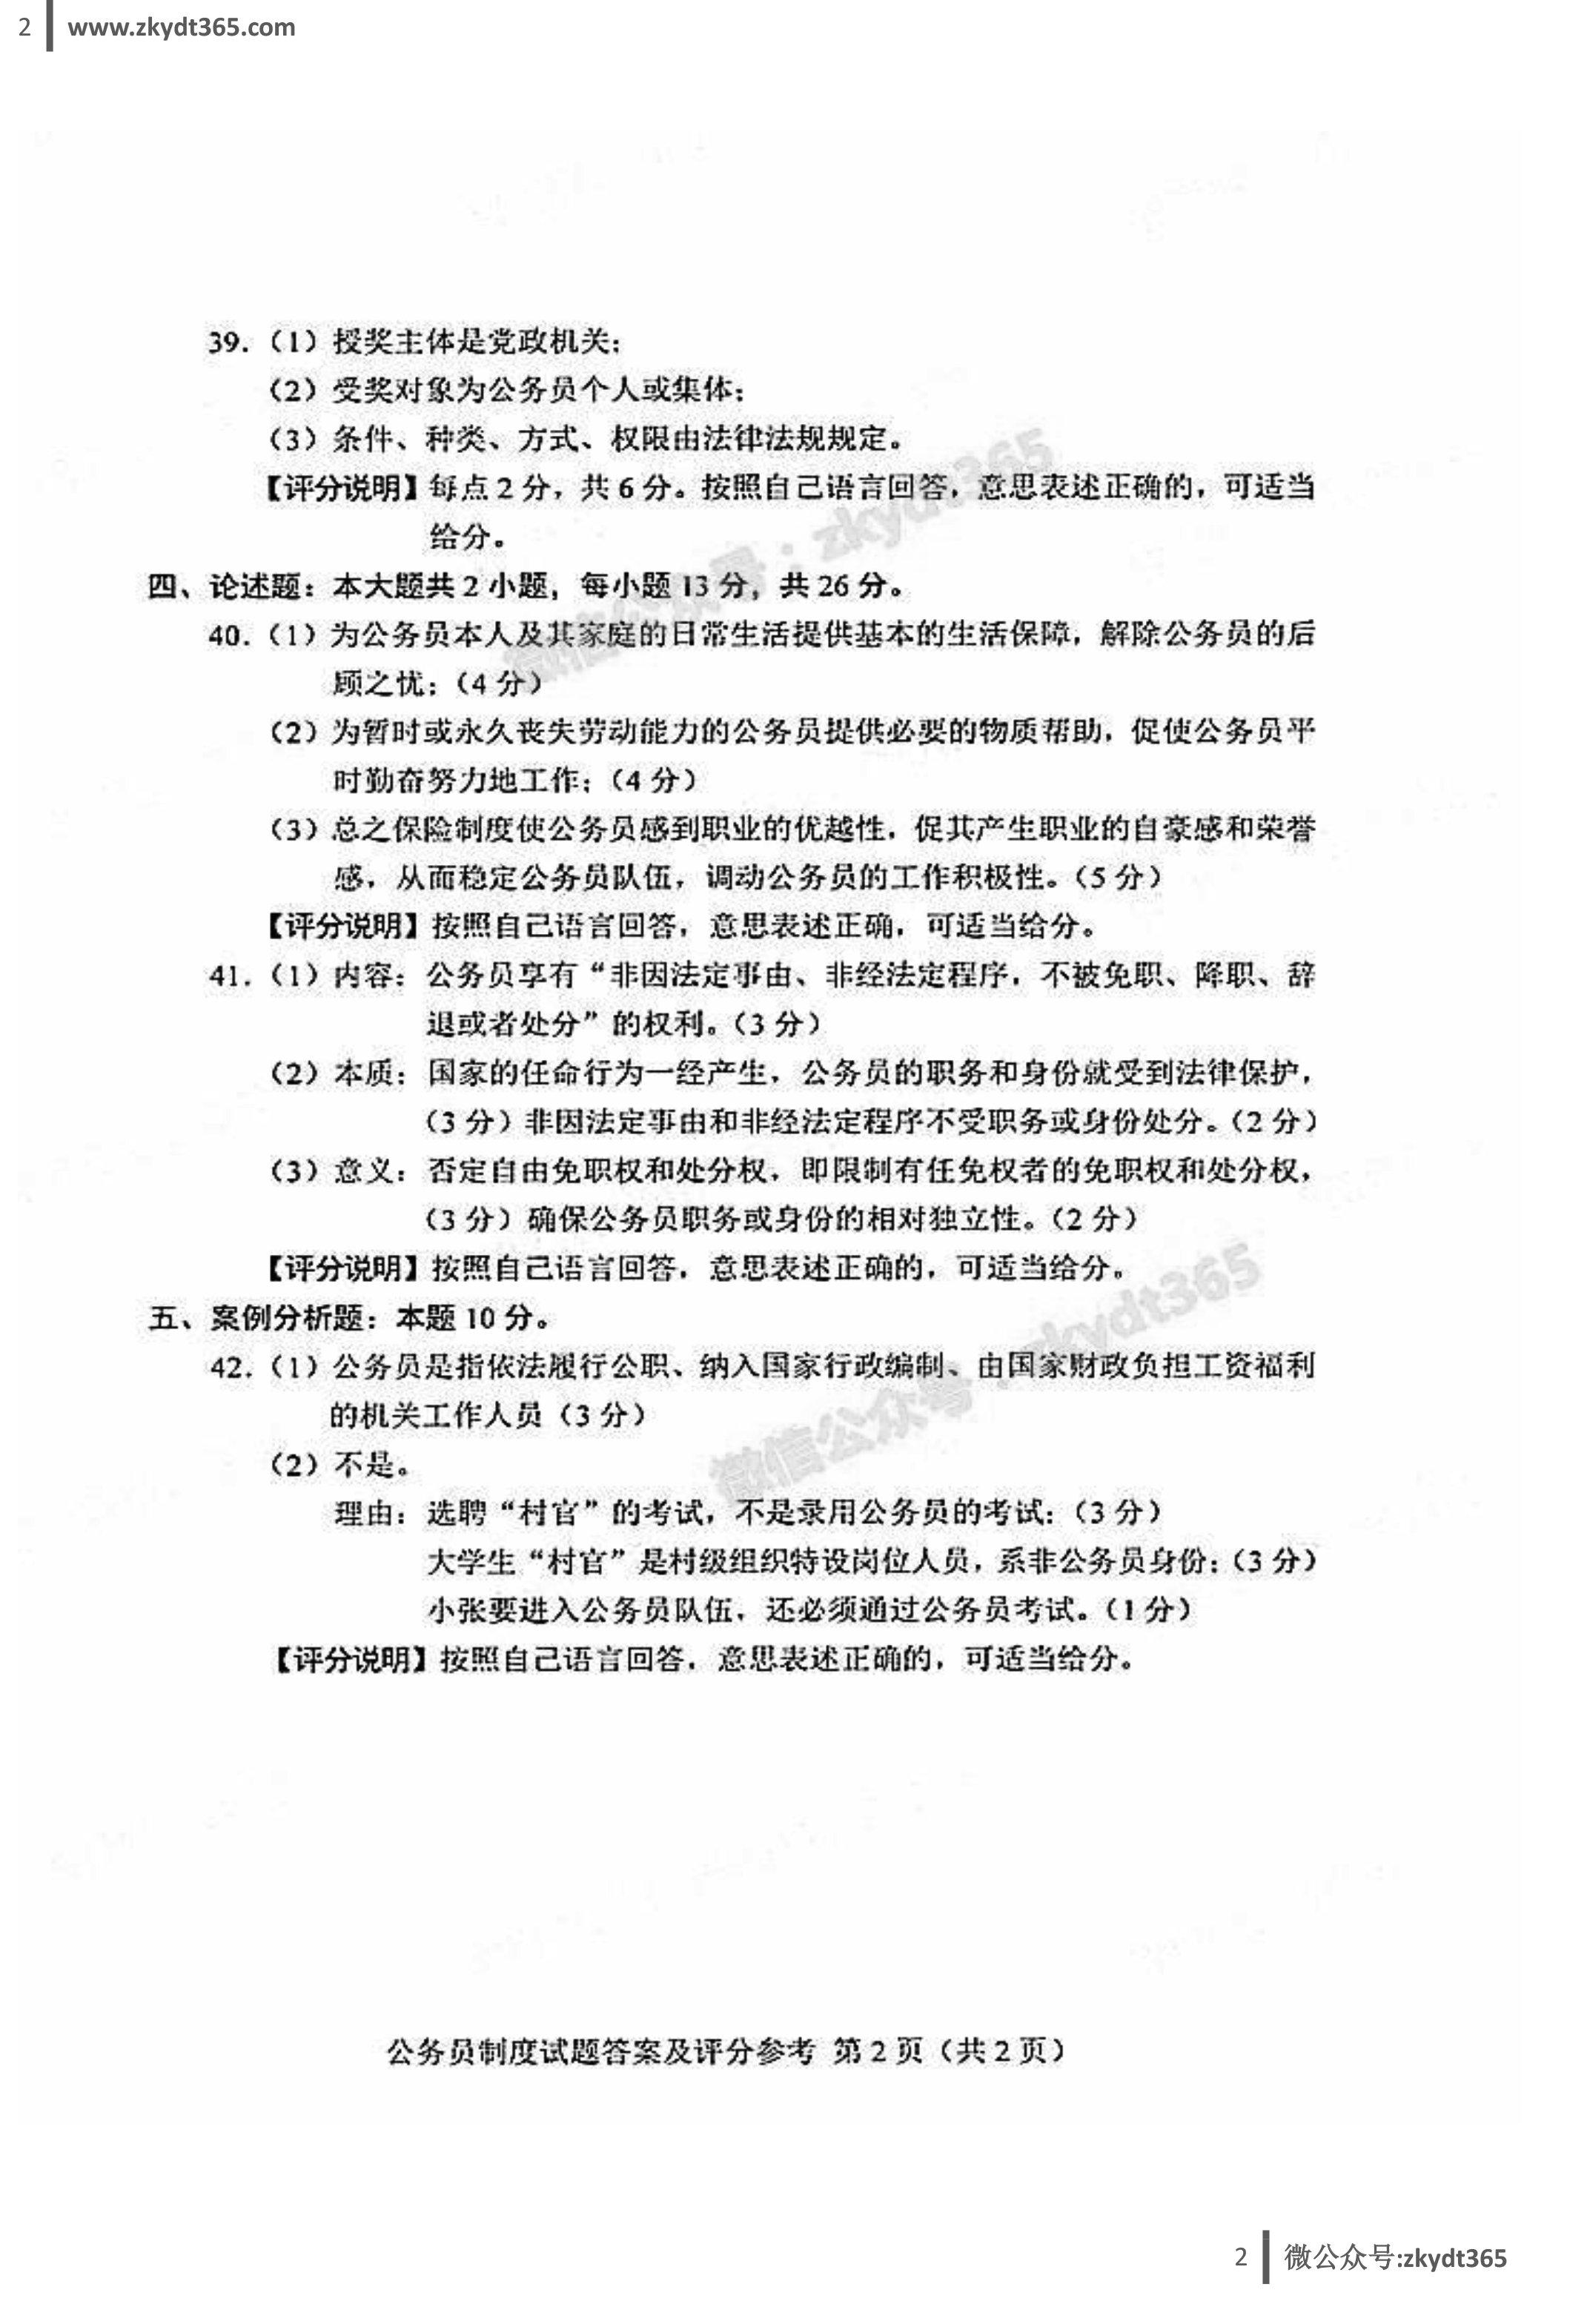 贵州省2018年04月自学考试01848《公务员制度》真题答案